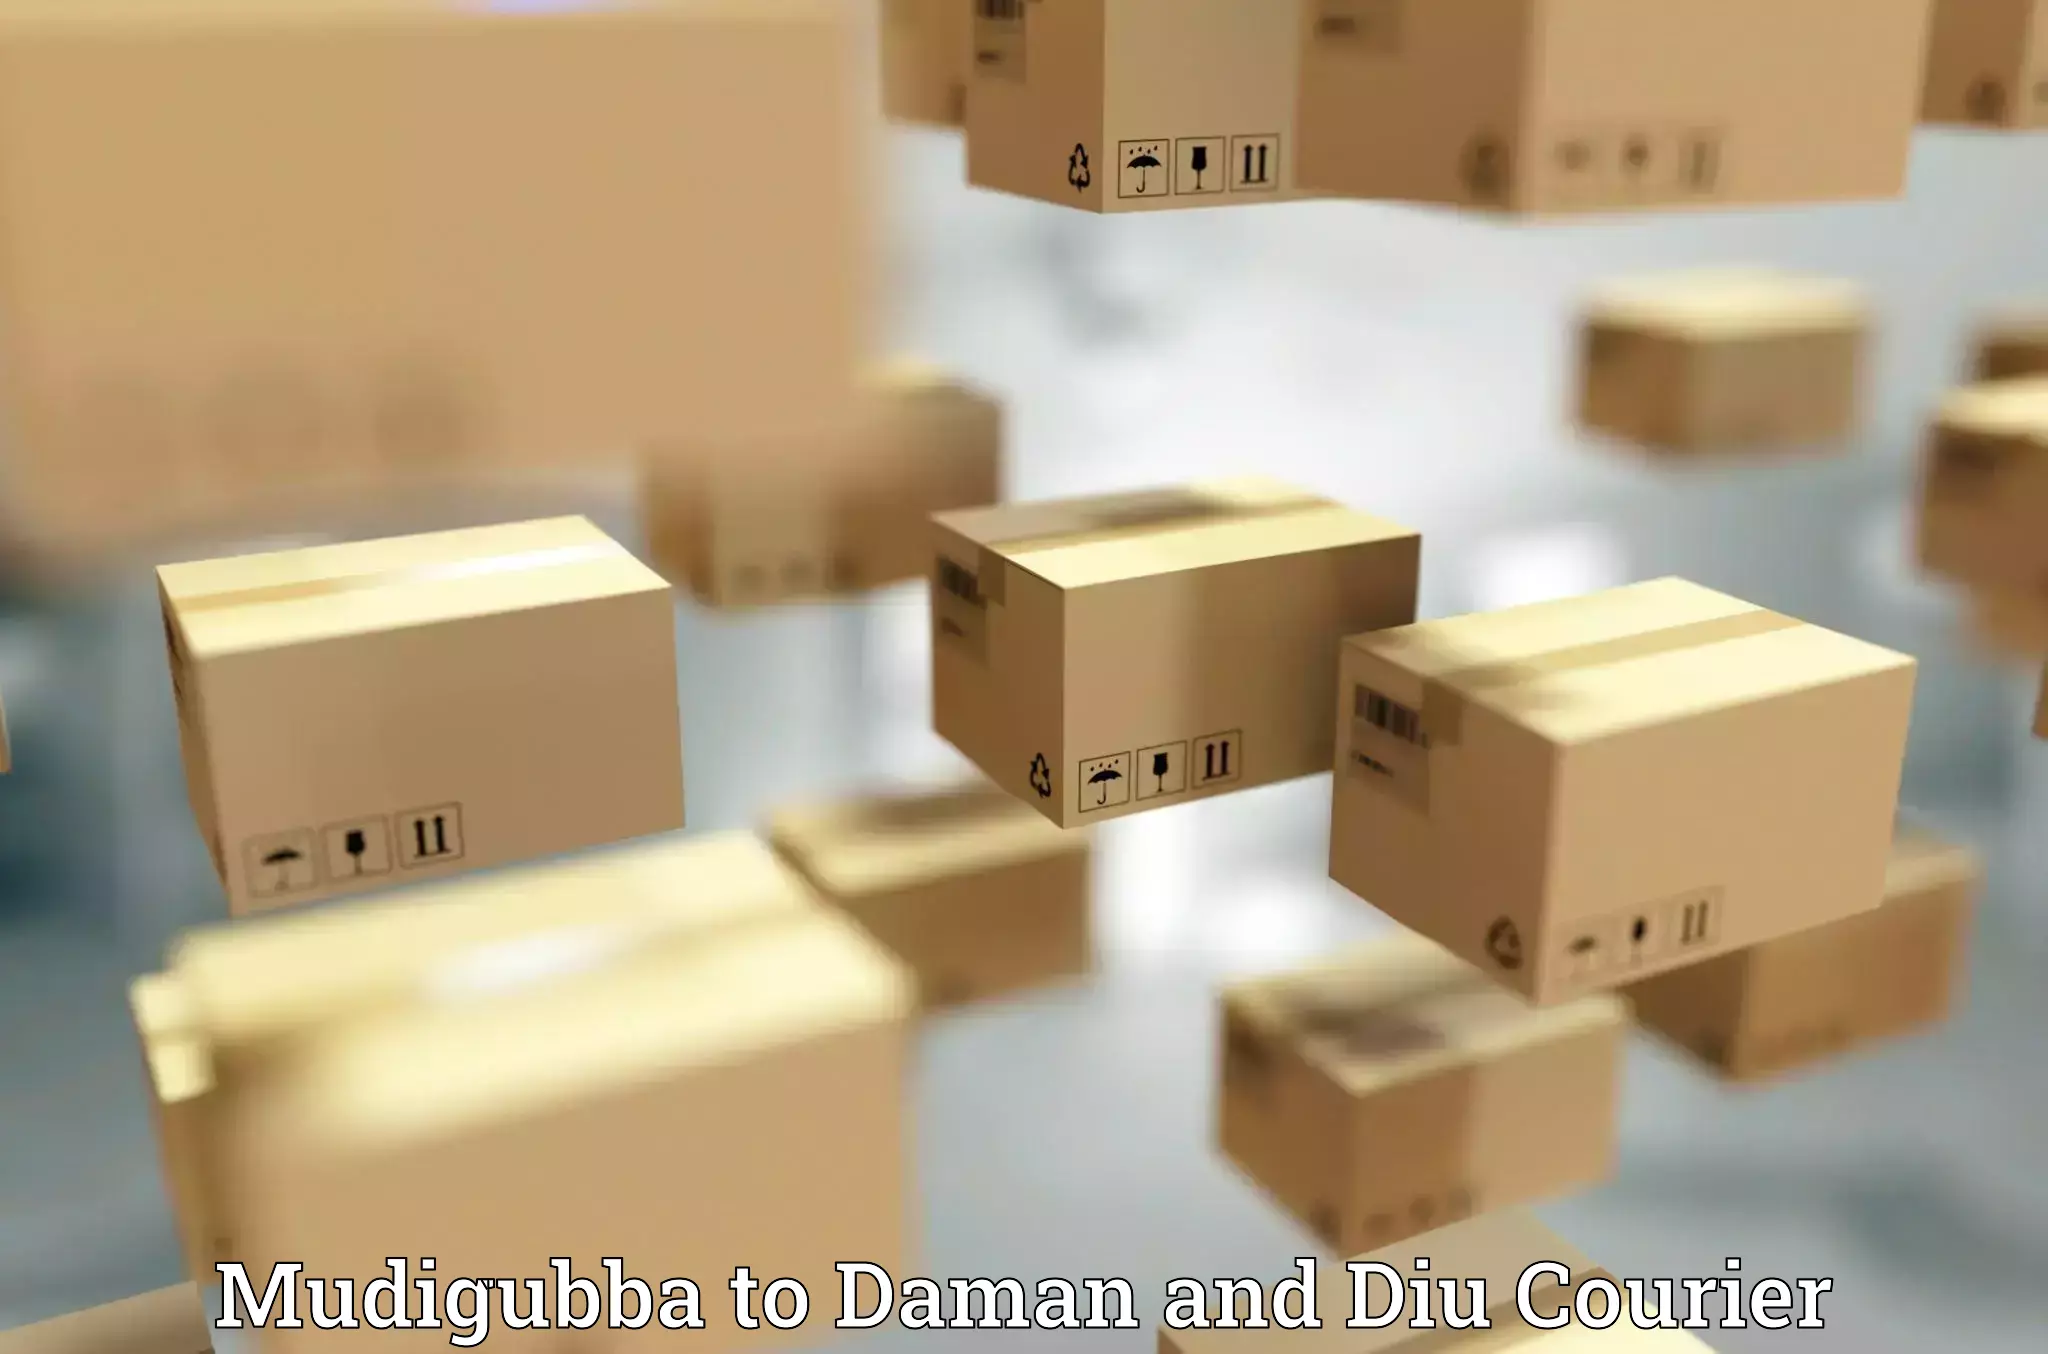 High-capacity shipping options Mudigubba to Diu